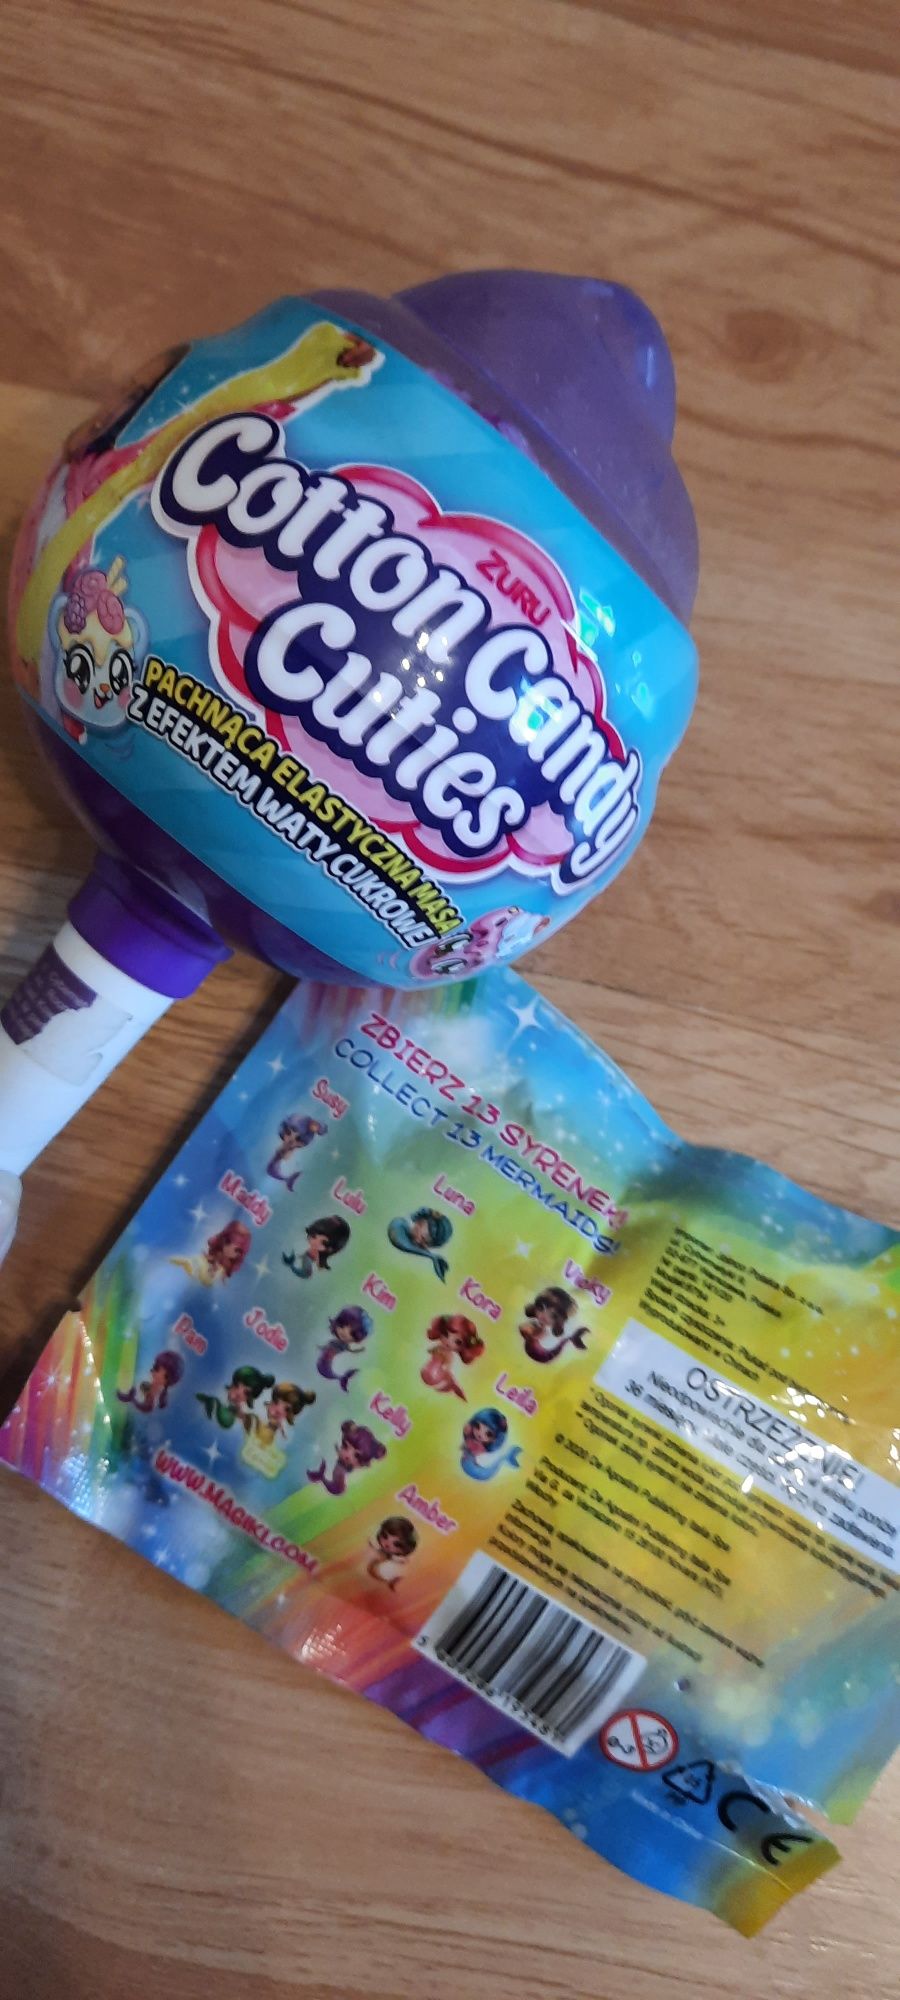 Corron candy cuties elastyczna masa zuru z niespodzianka + syrenka